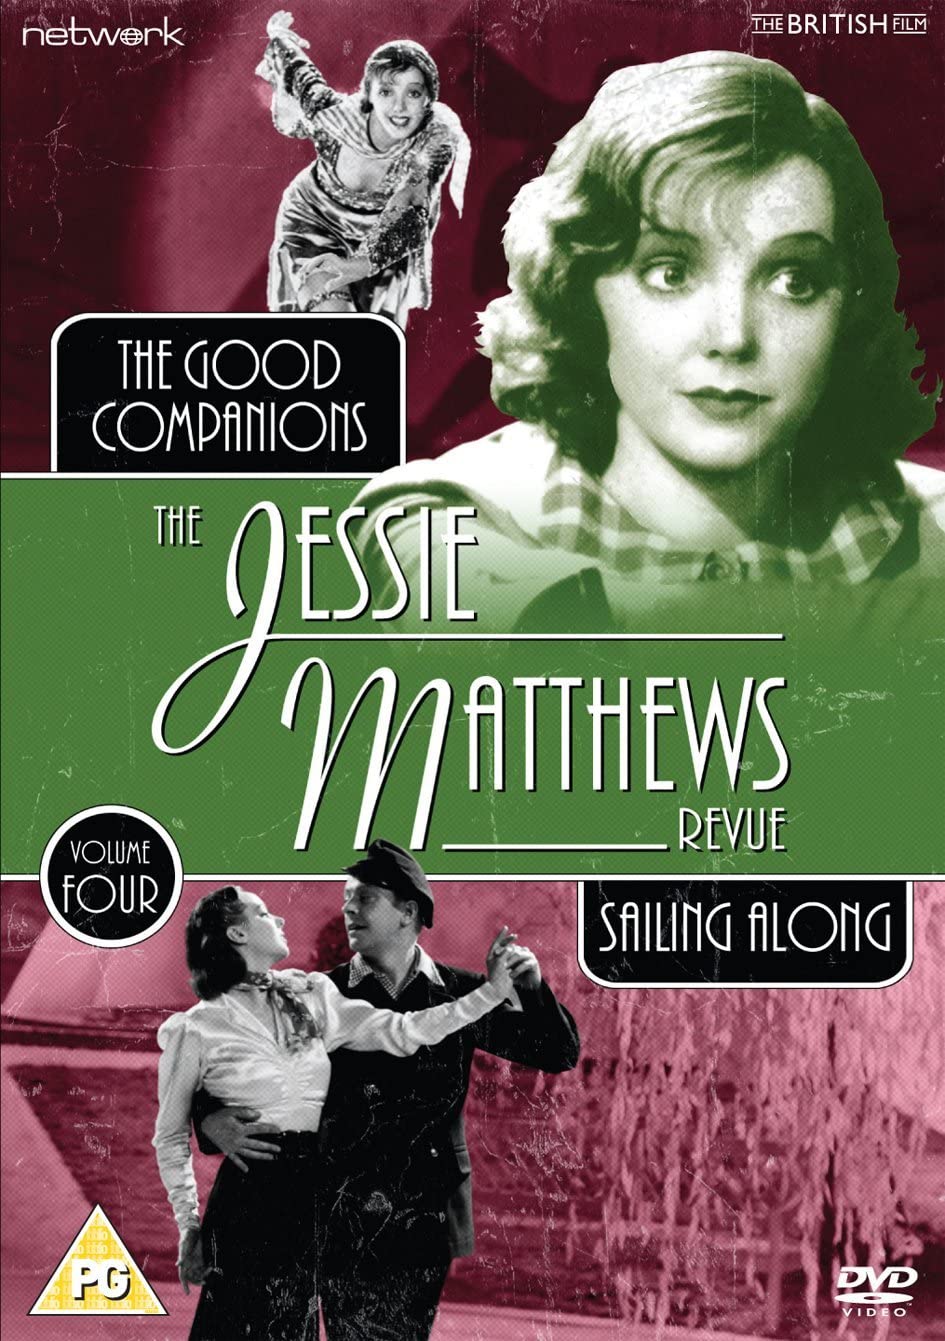 The Jessie Matthews Revue volume 4 [DVD]